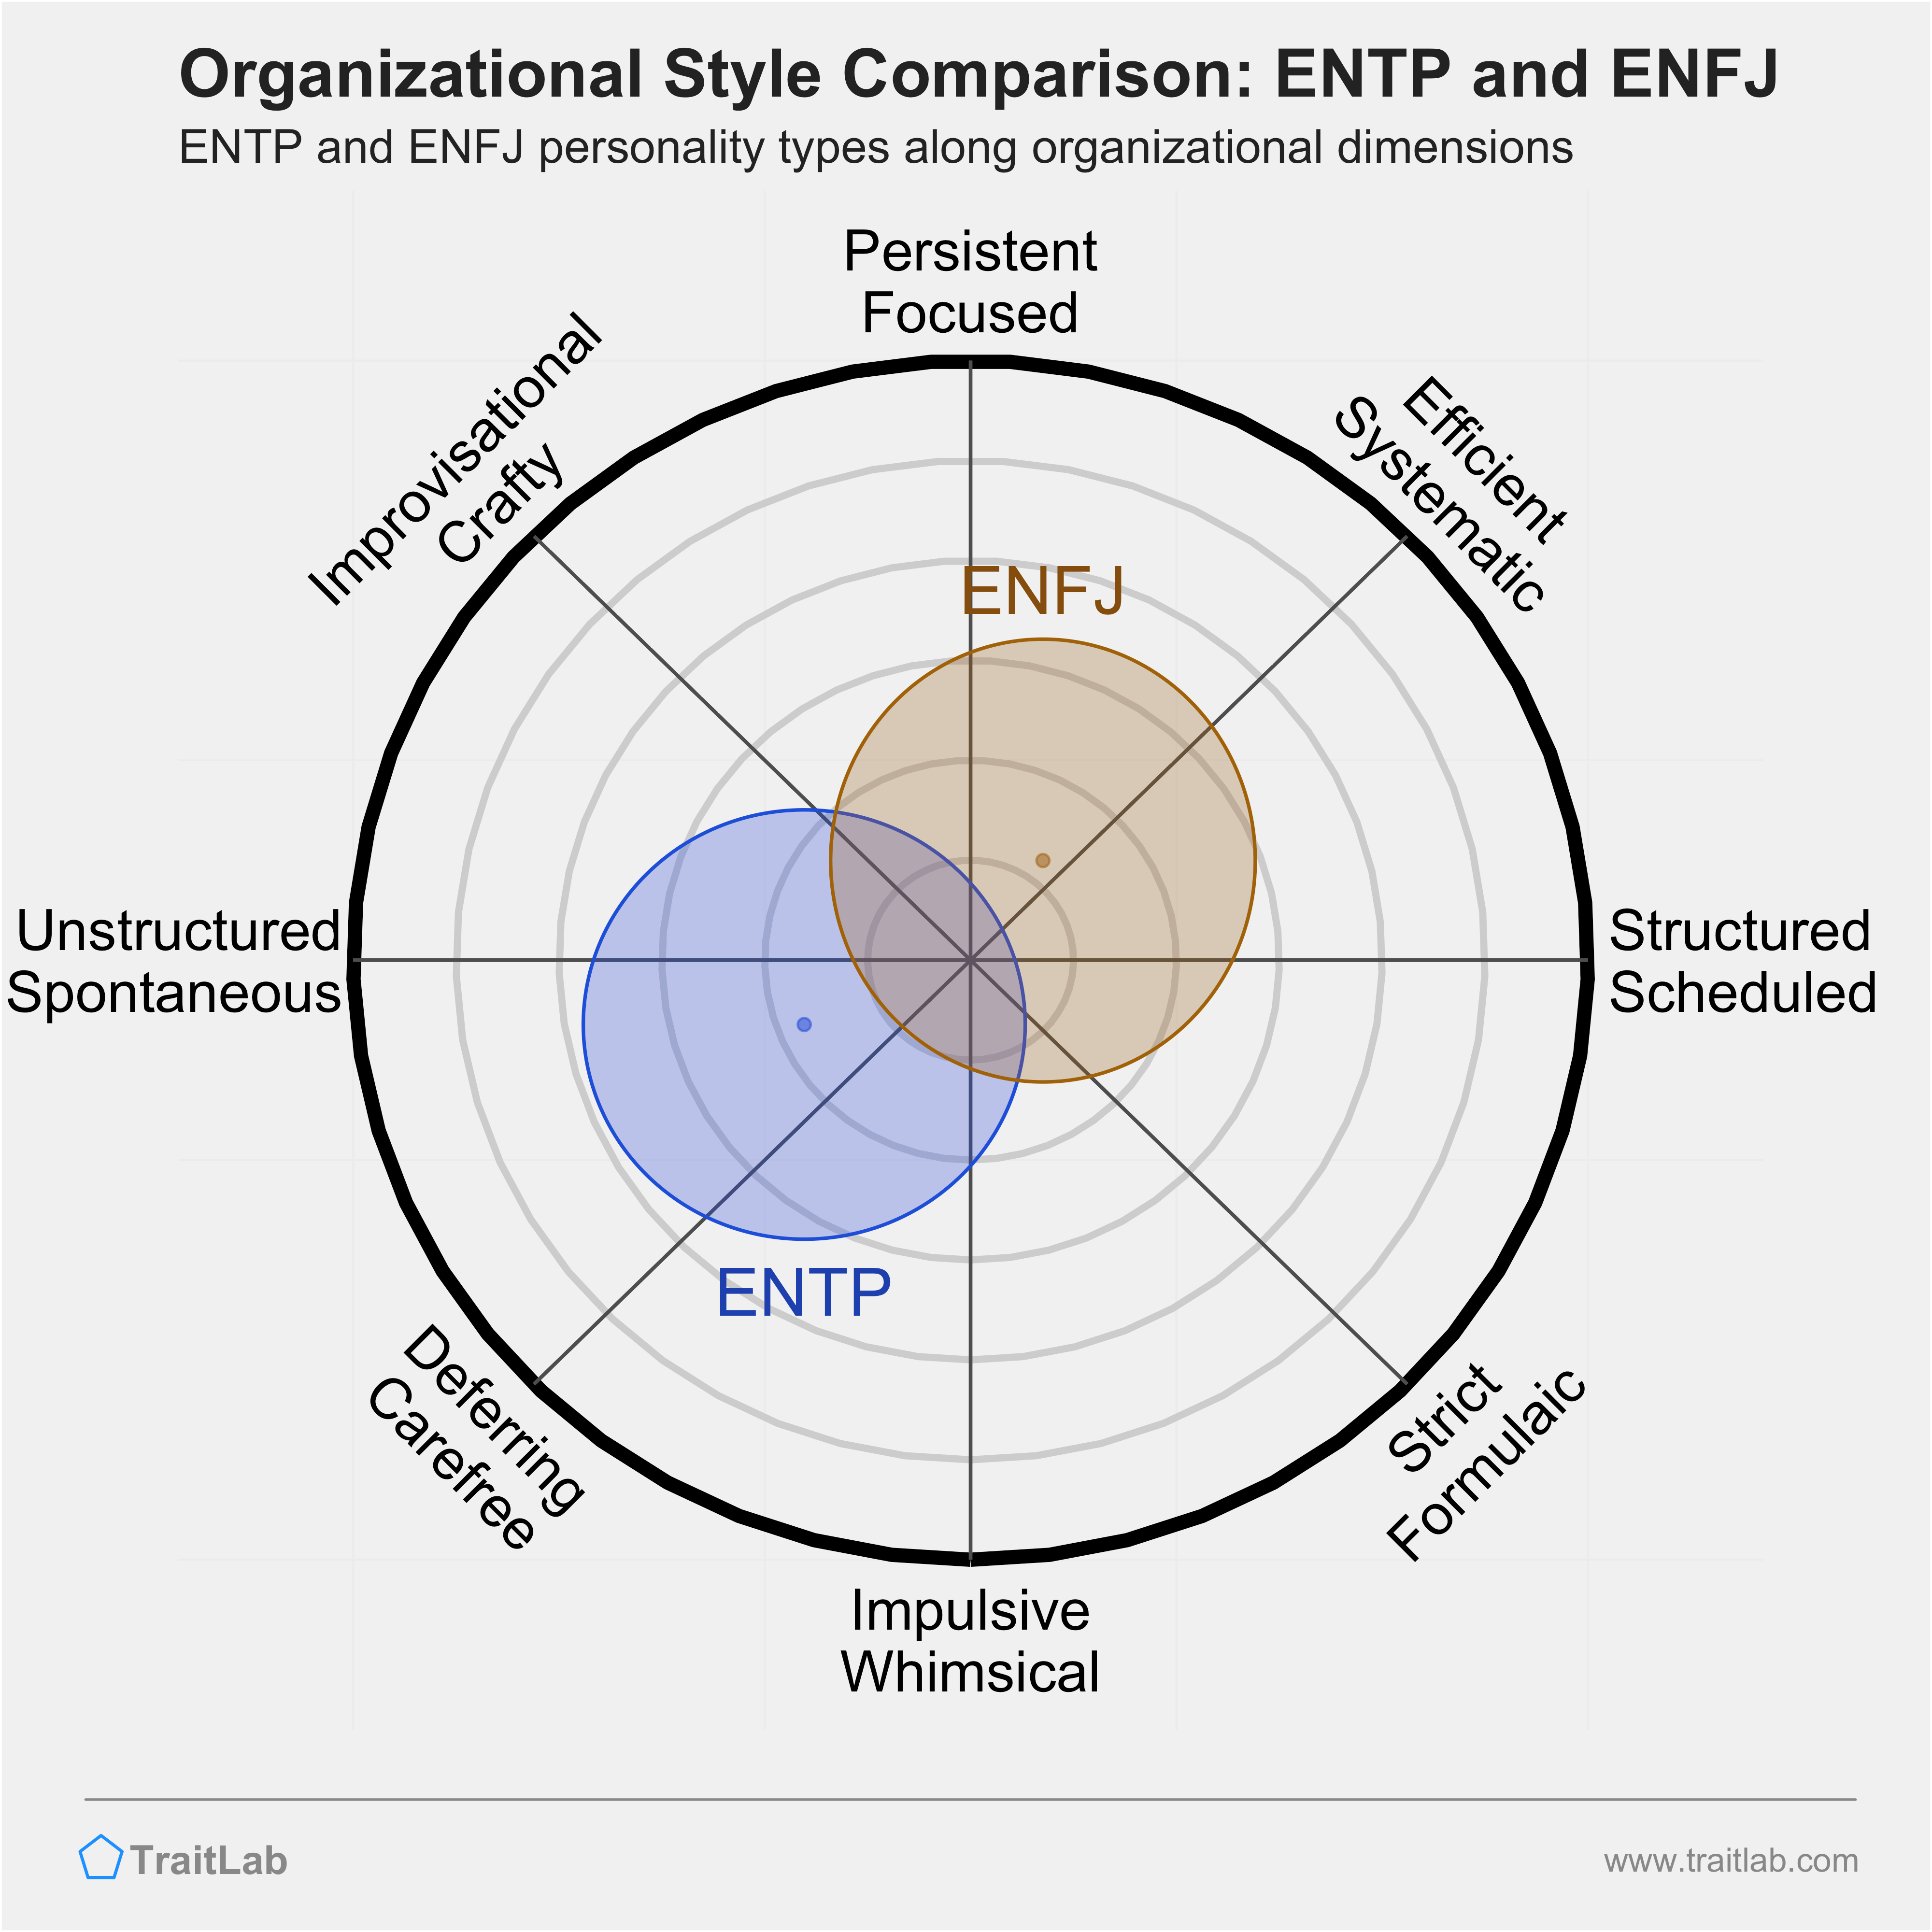 ENTP and ENFJ comparison across organizational dimensions